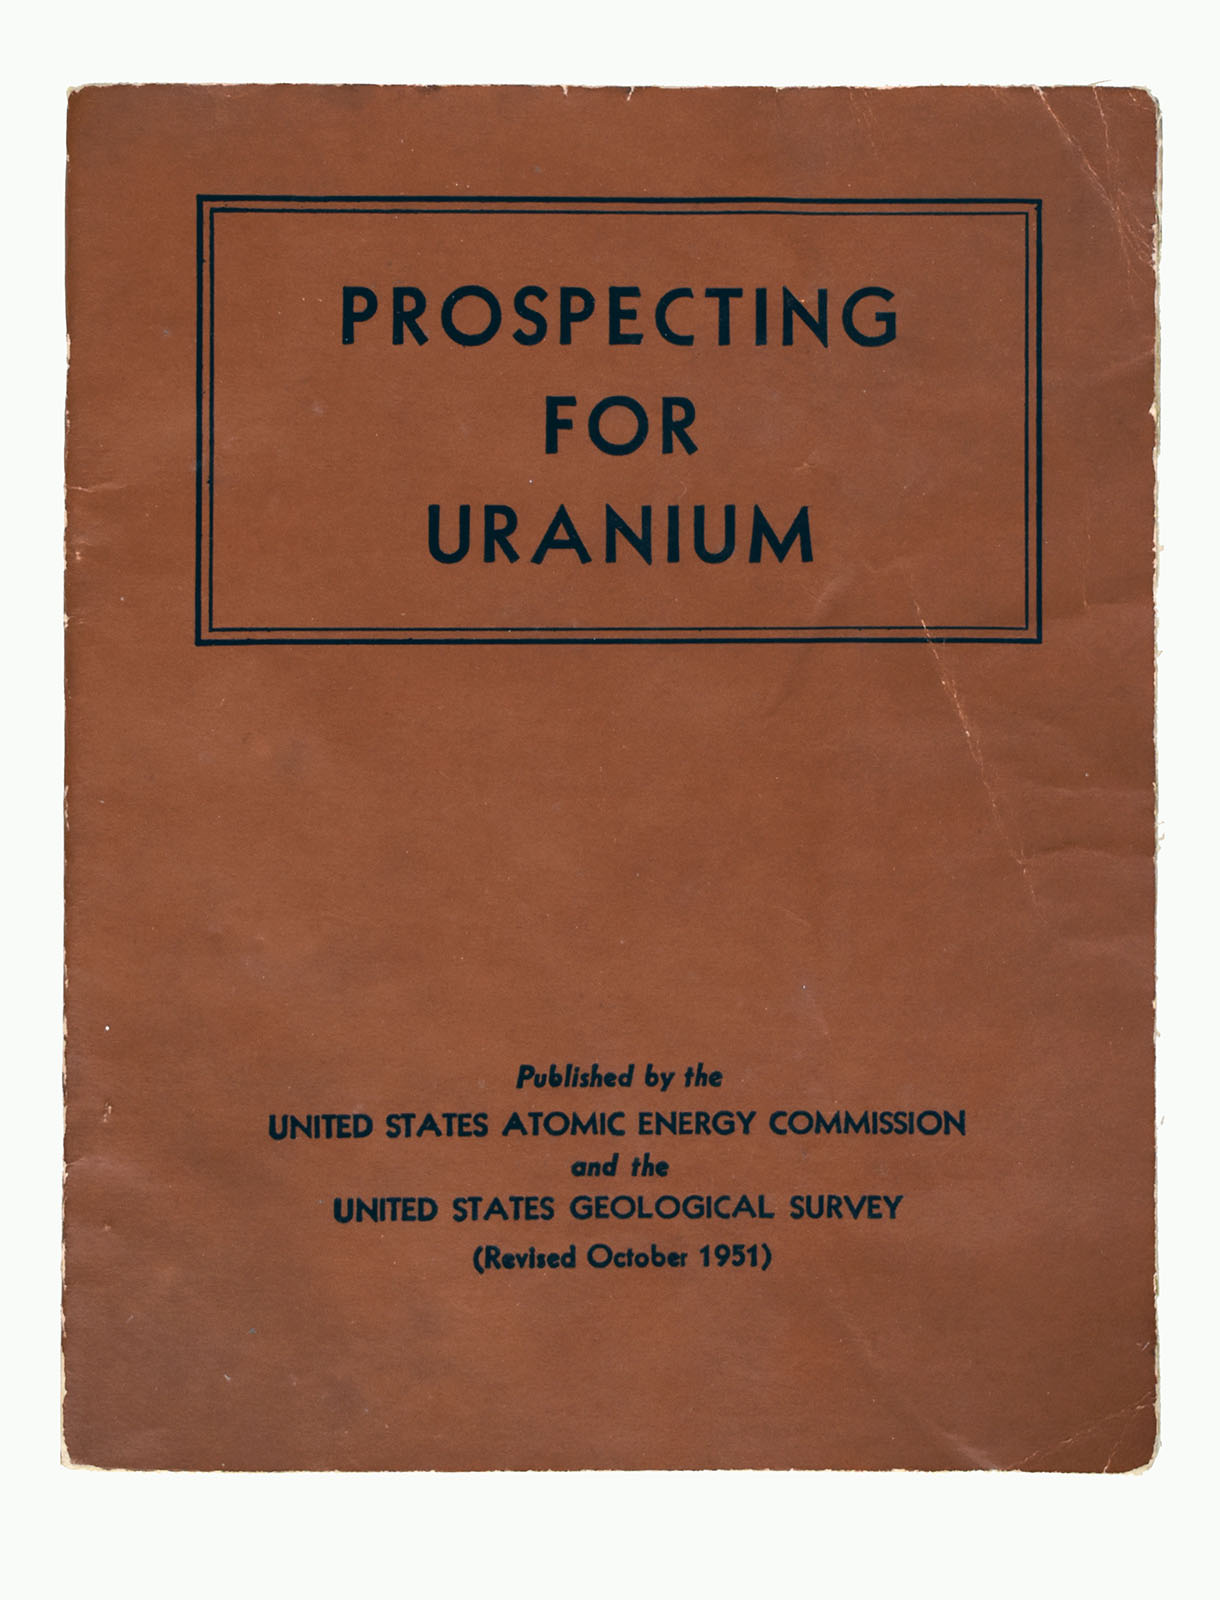 United States Atomic Energy Commission and United States Geological Survey, Prospecting for Uranium, 1951